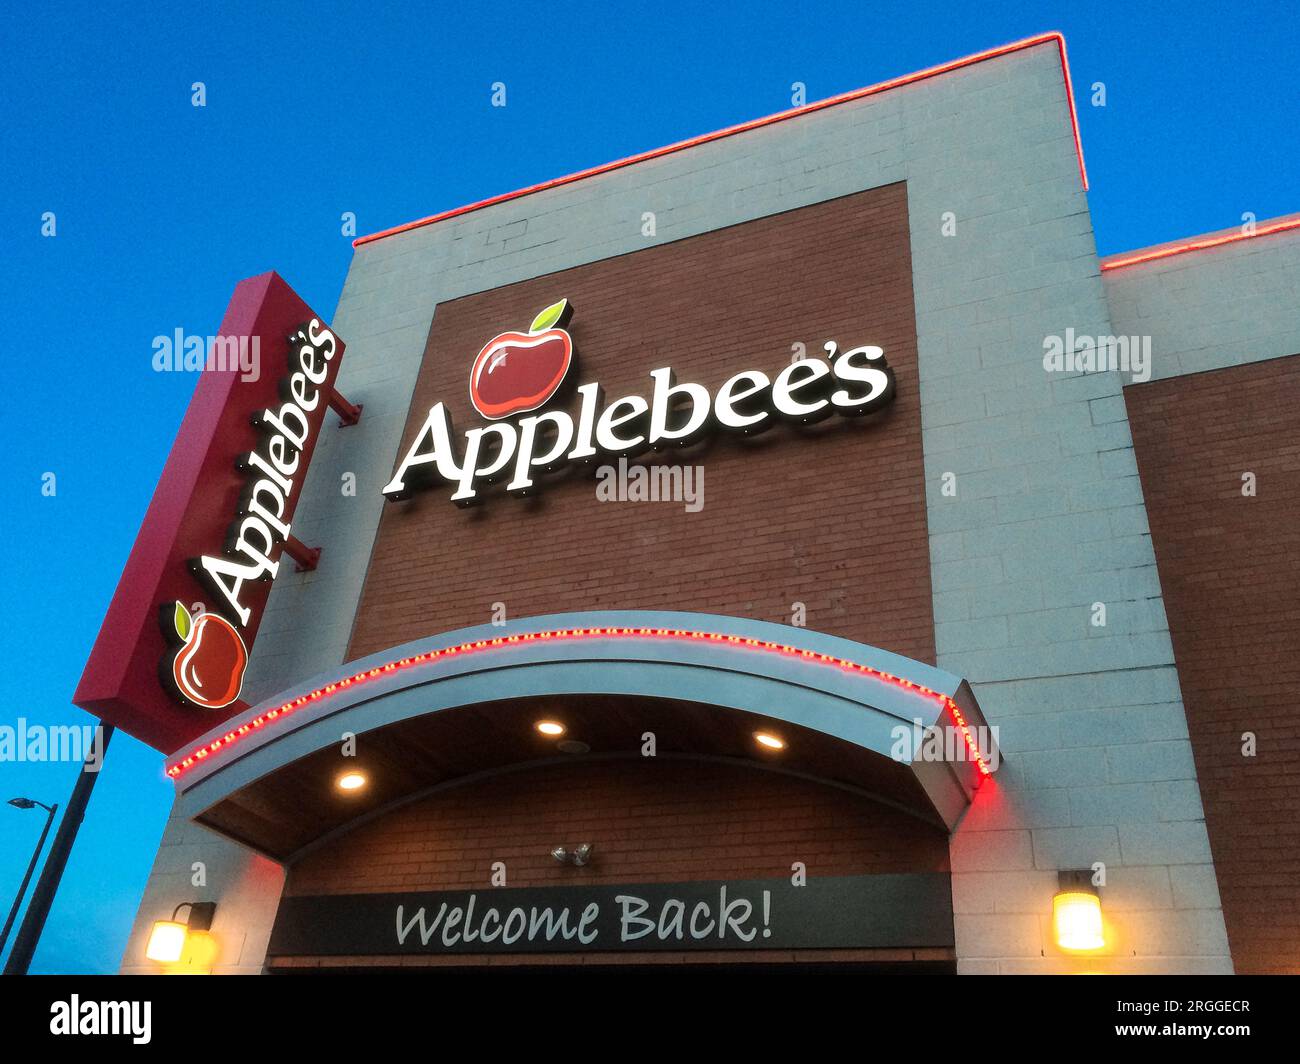 Applebee's restaurant exterior. Stock Photo